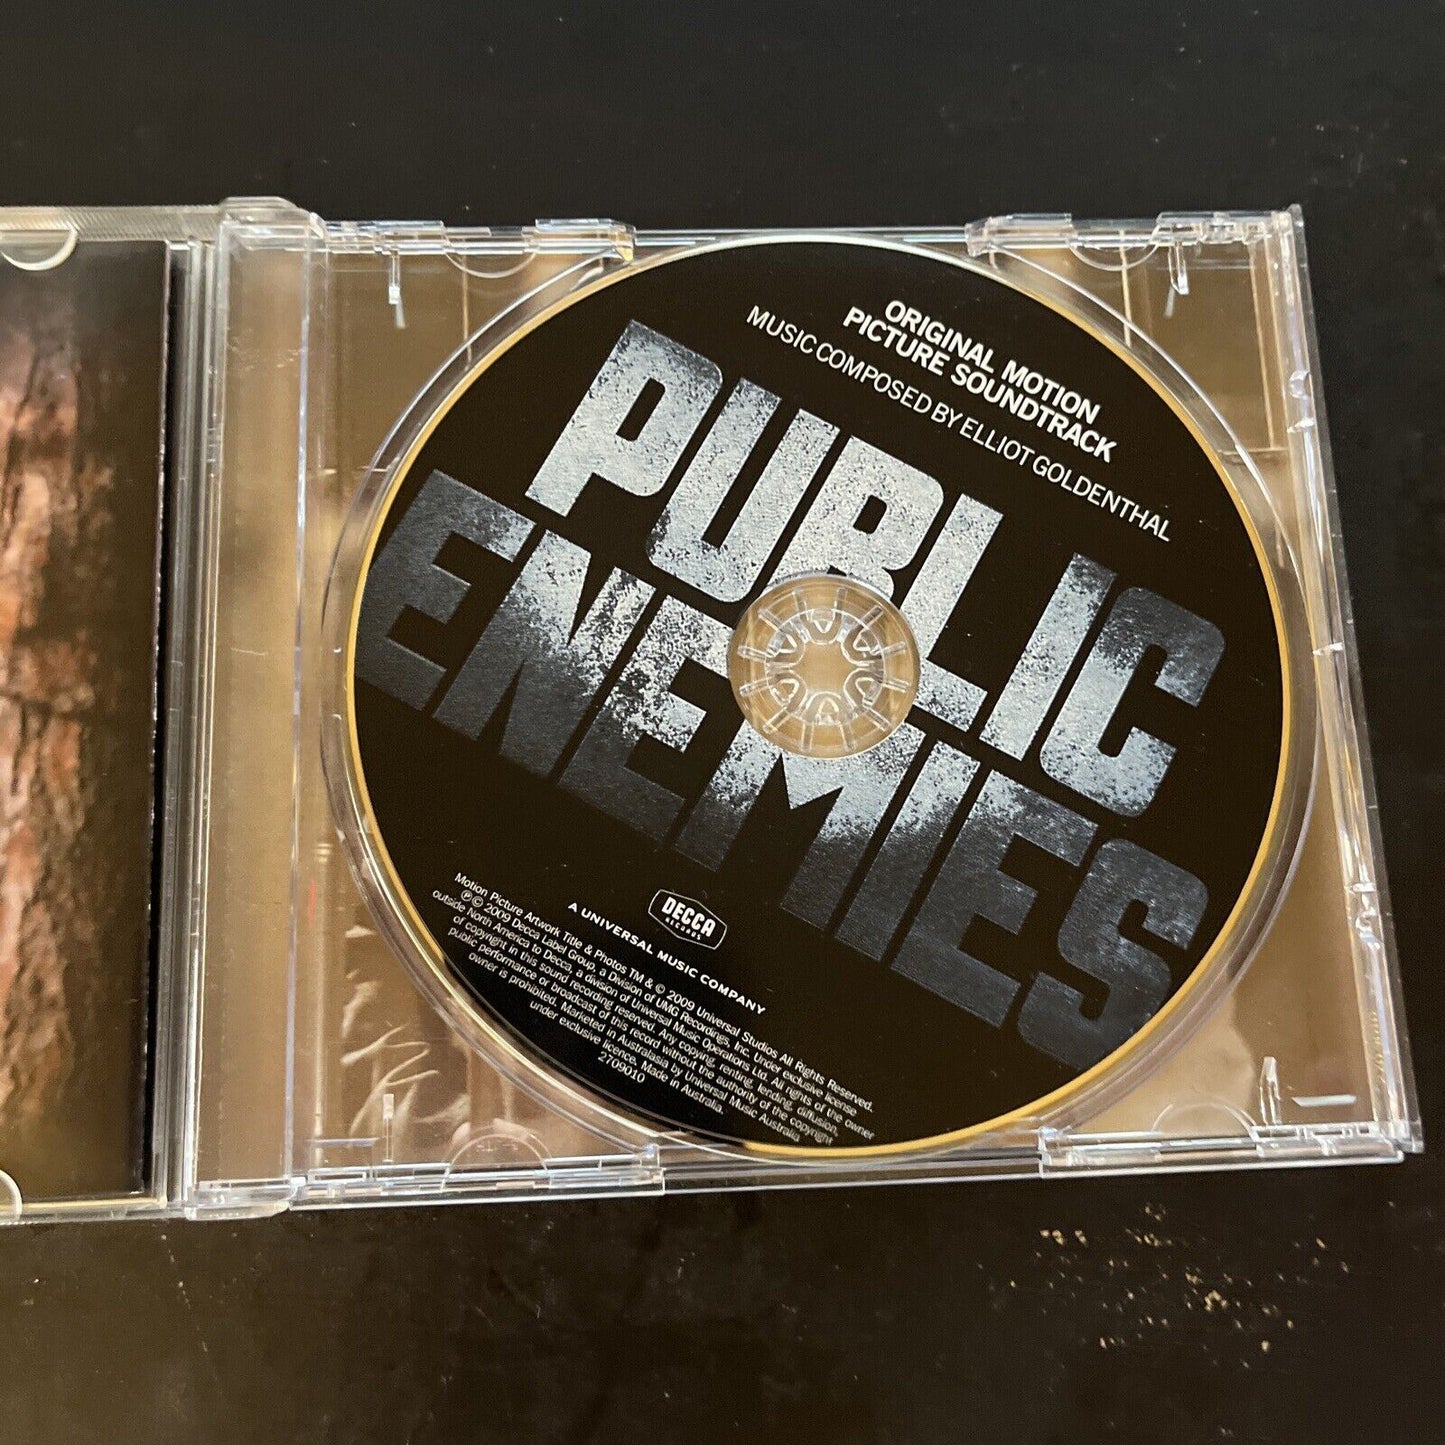 Public Enemies Original Motion Picture Soundtrack - Elliot Goldenthal (CD, 2009)